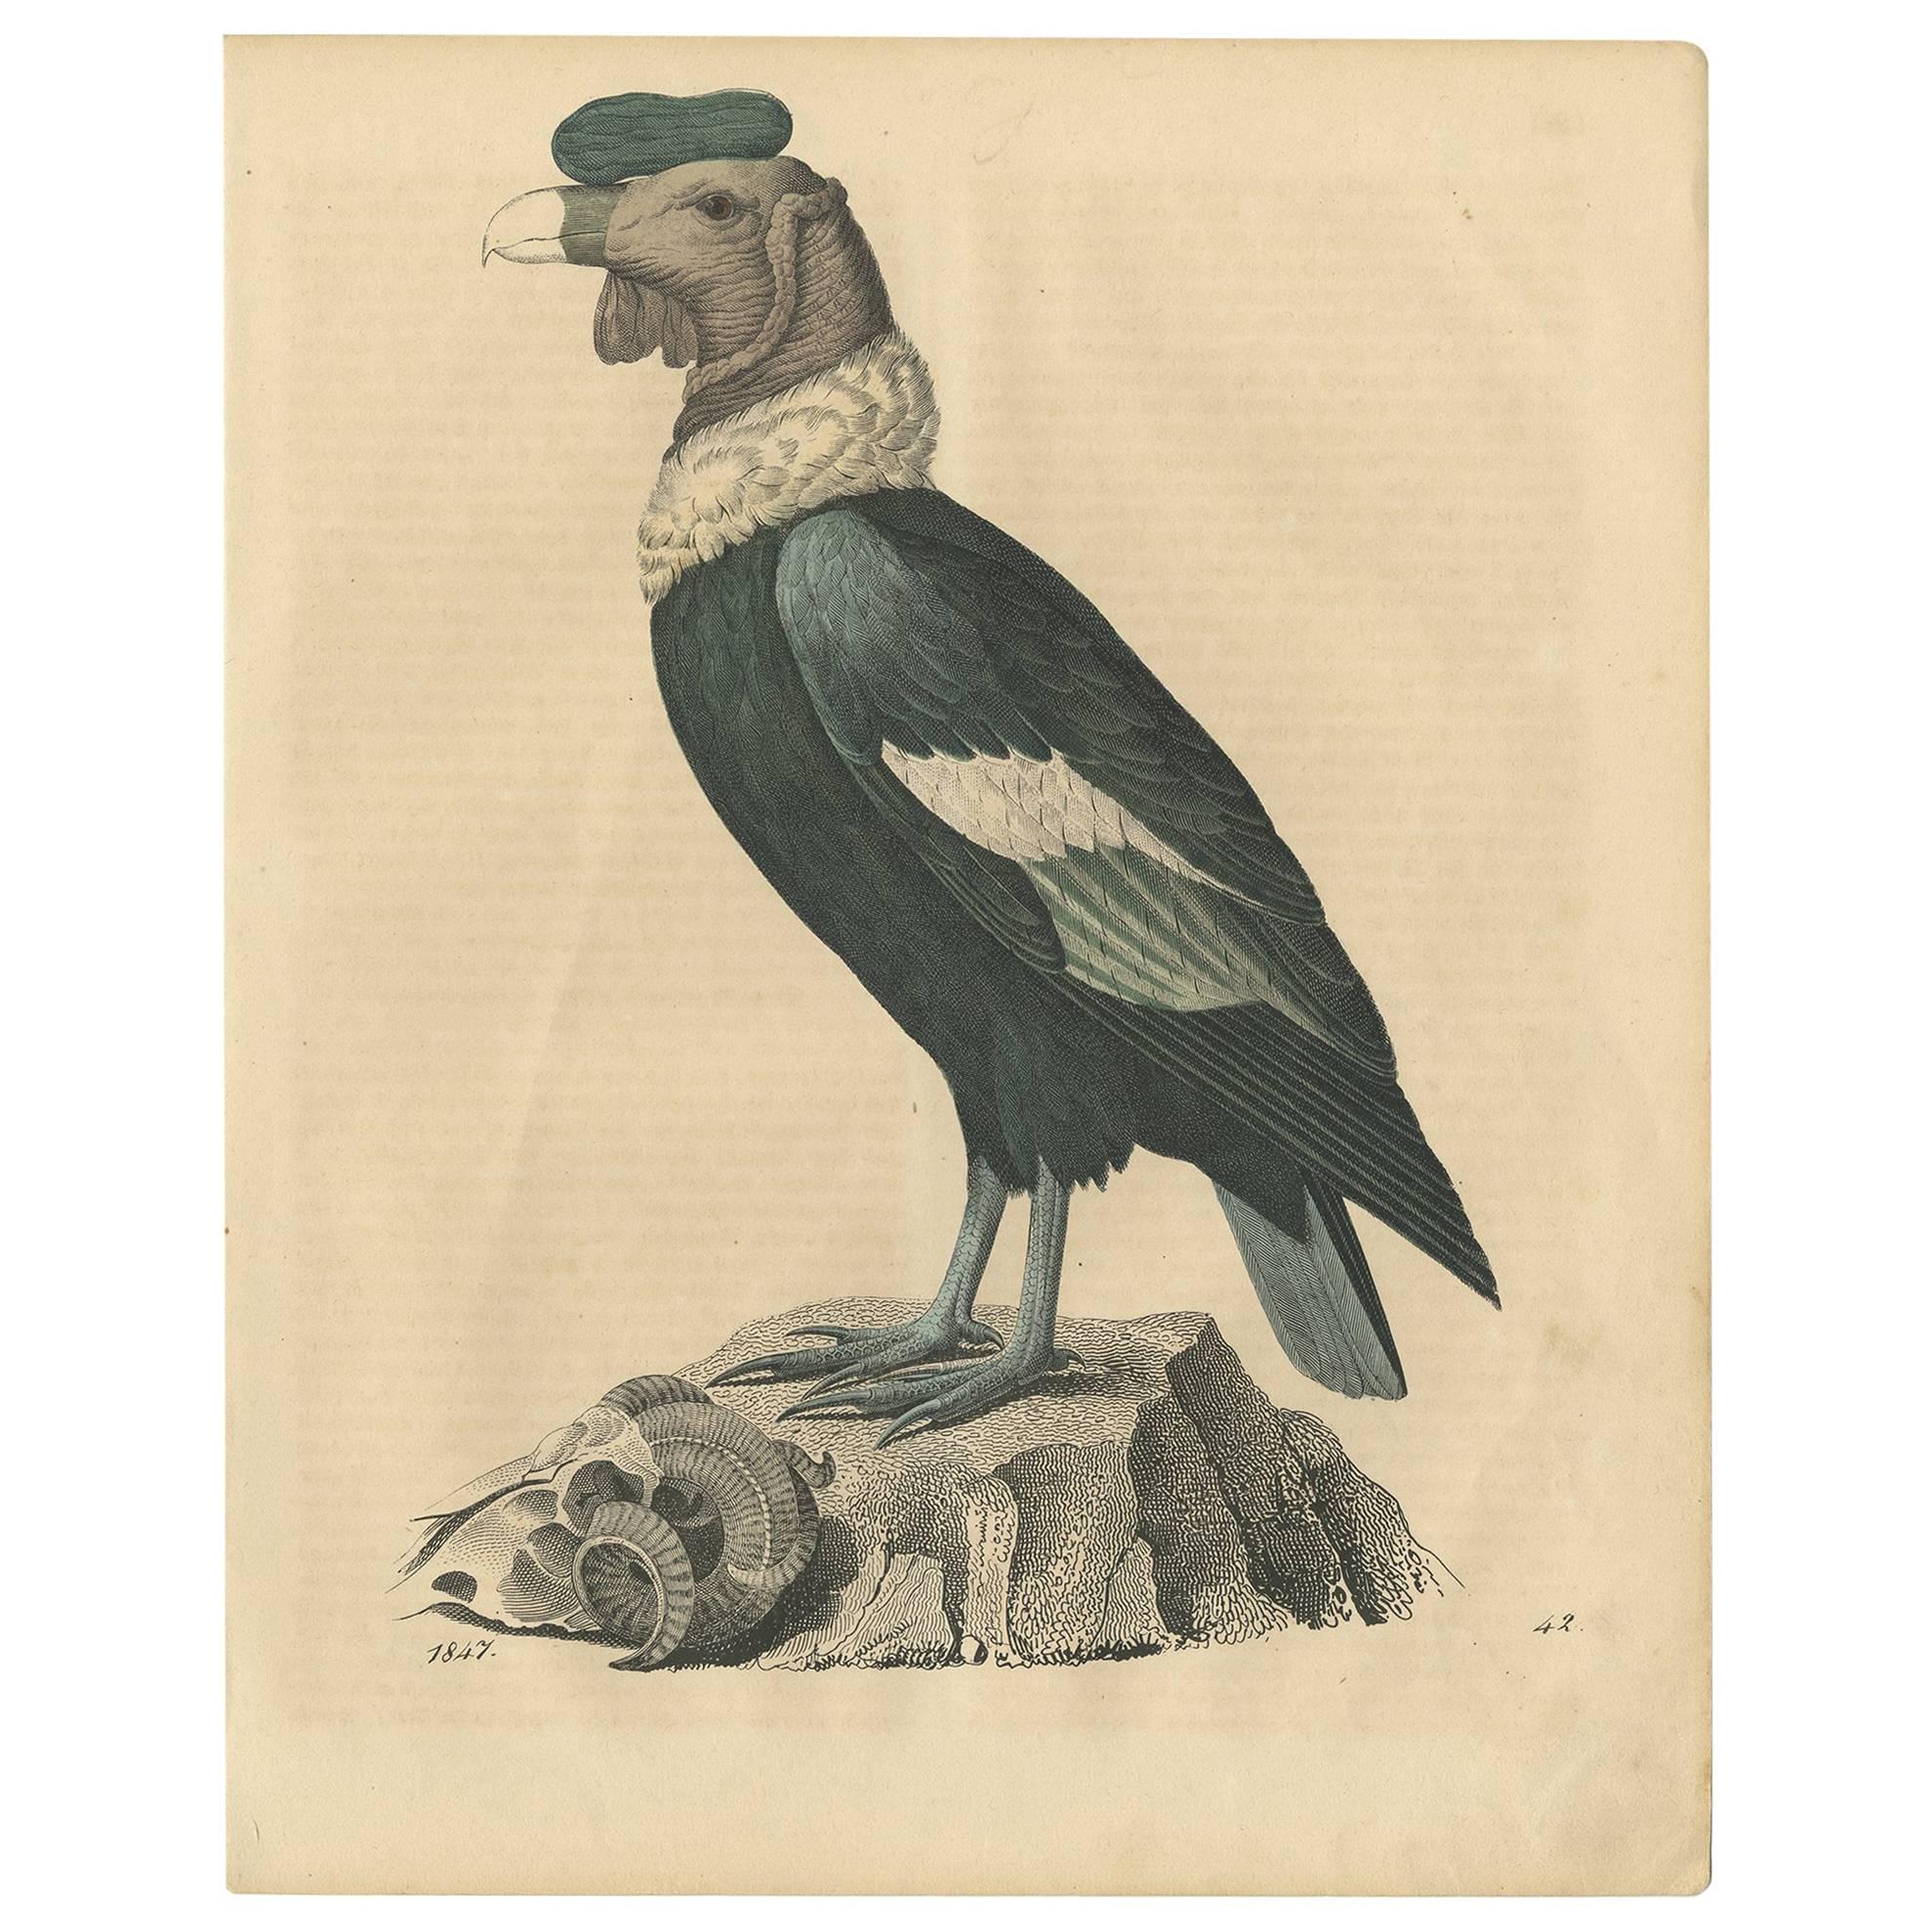 Gravure ancienne d'un condor "vautour" par C.I.C., 1847